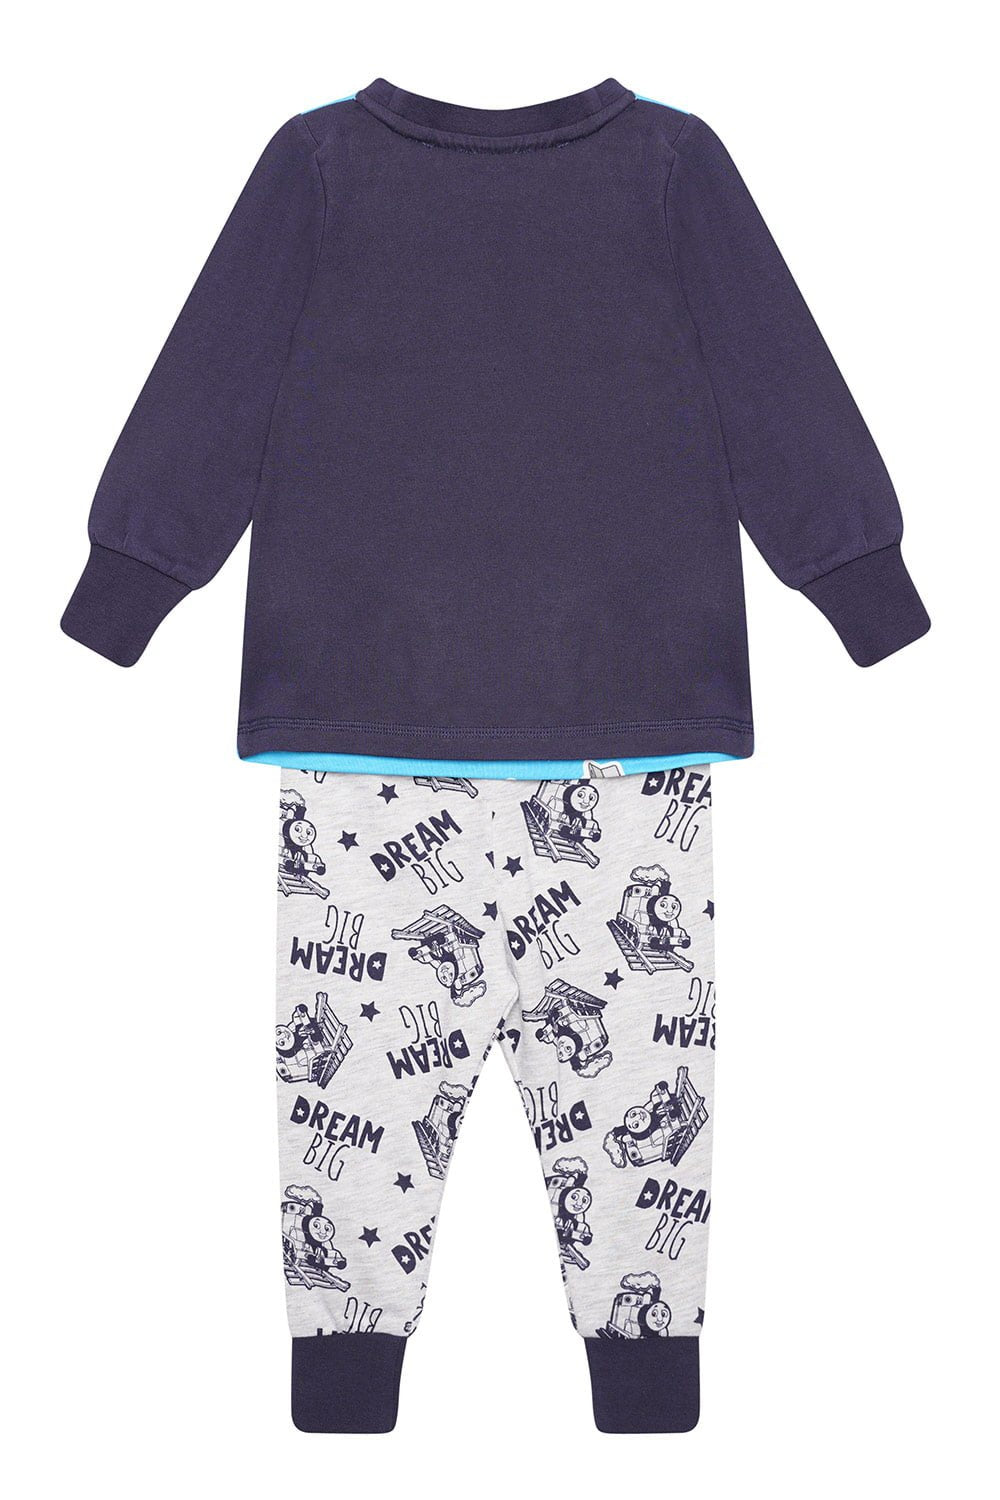 Thomas and Friends Organic Cotton Pyjamas - Brand Threads